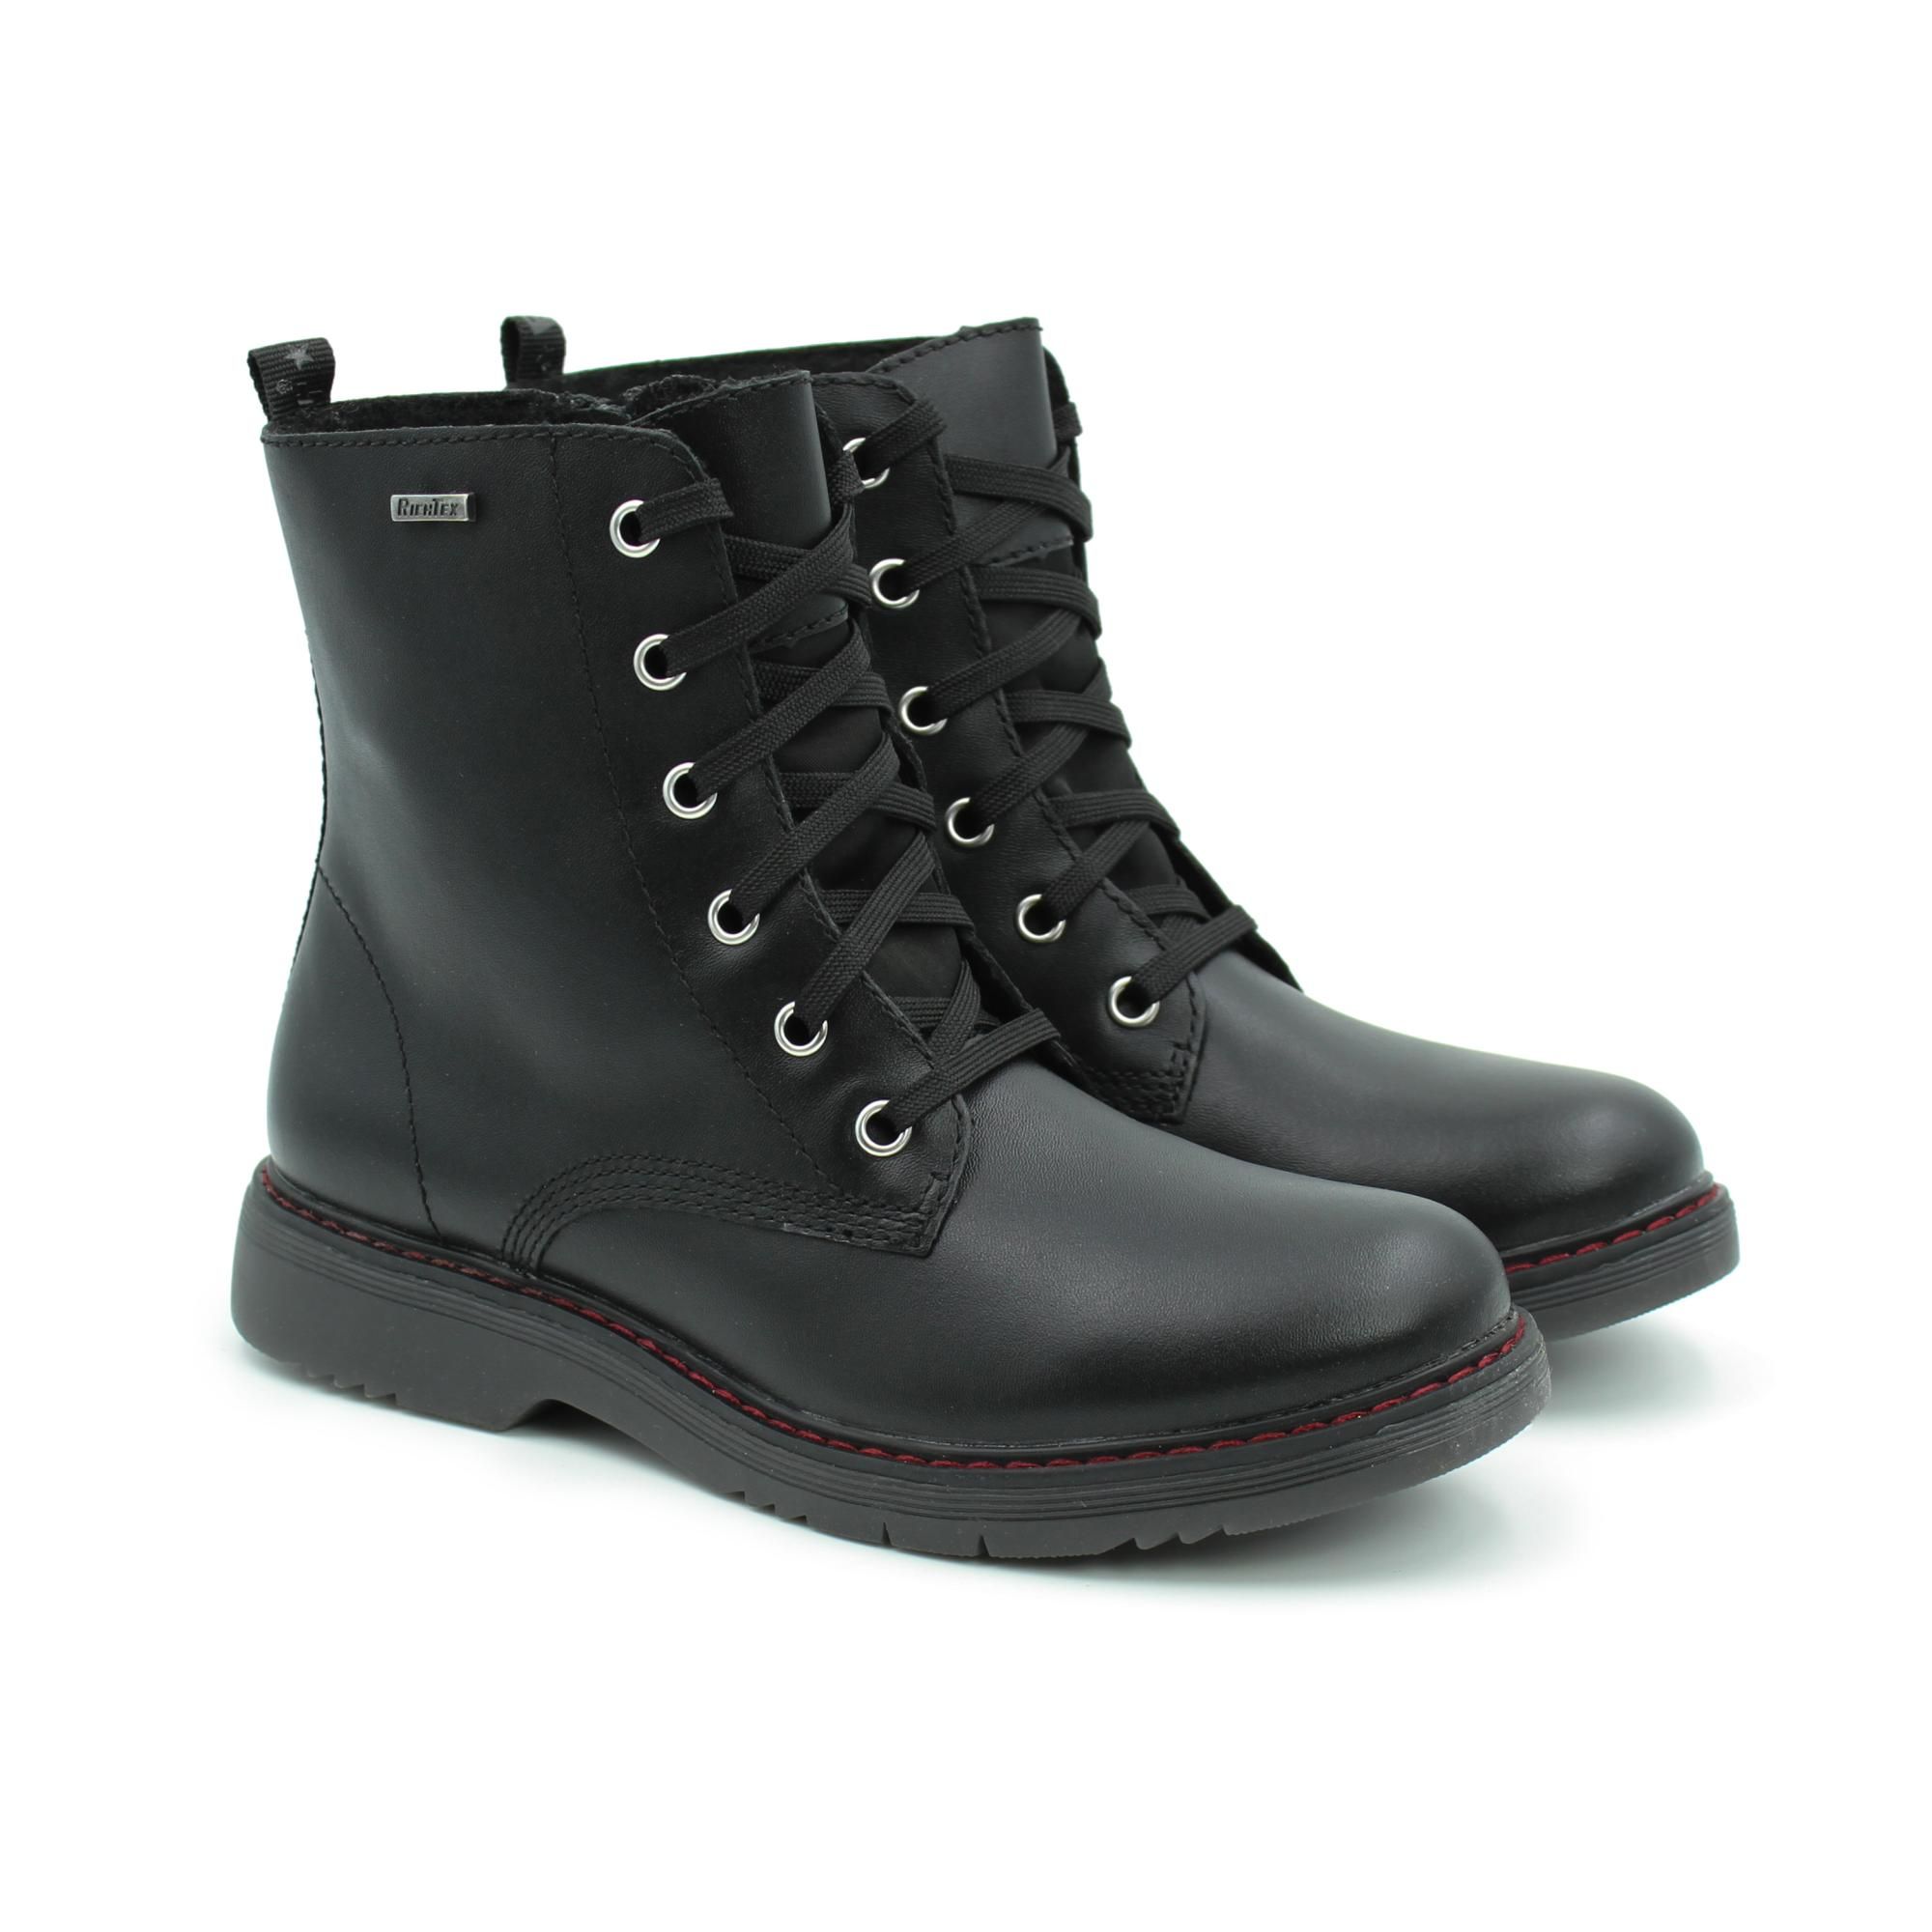 Ботинки Richter Prisma boot 4600-2131-9900 цв. черный р. 34